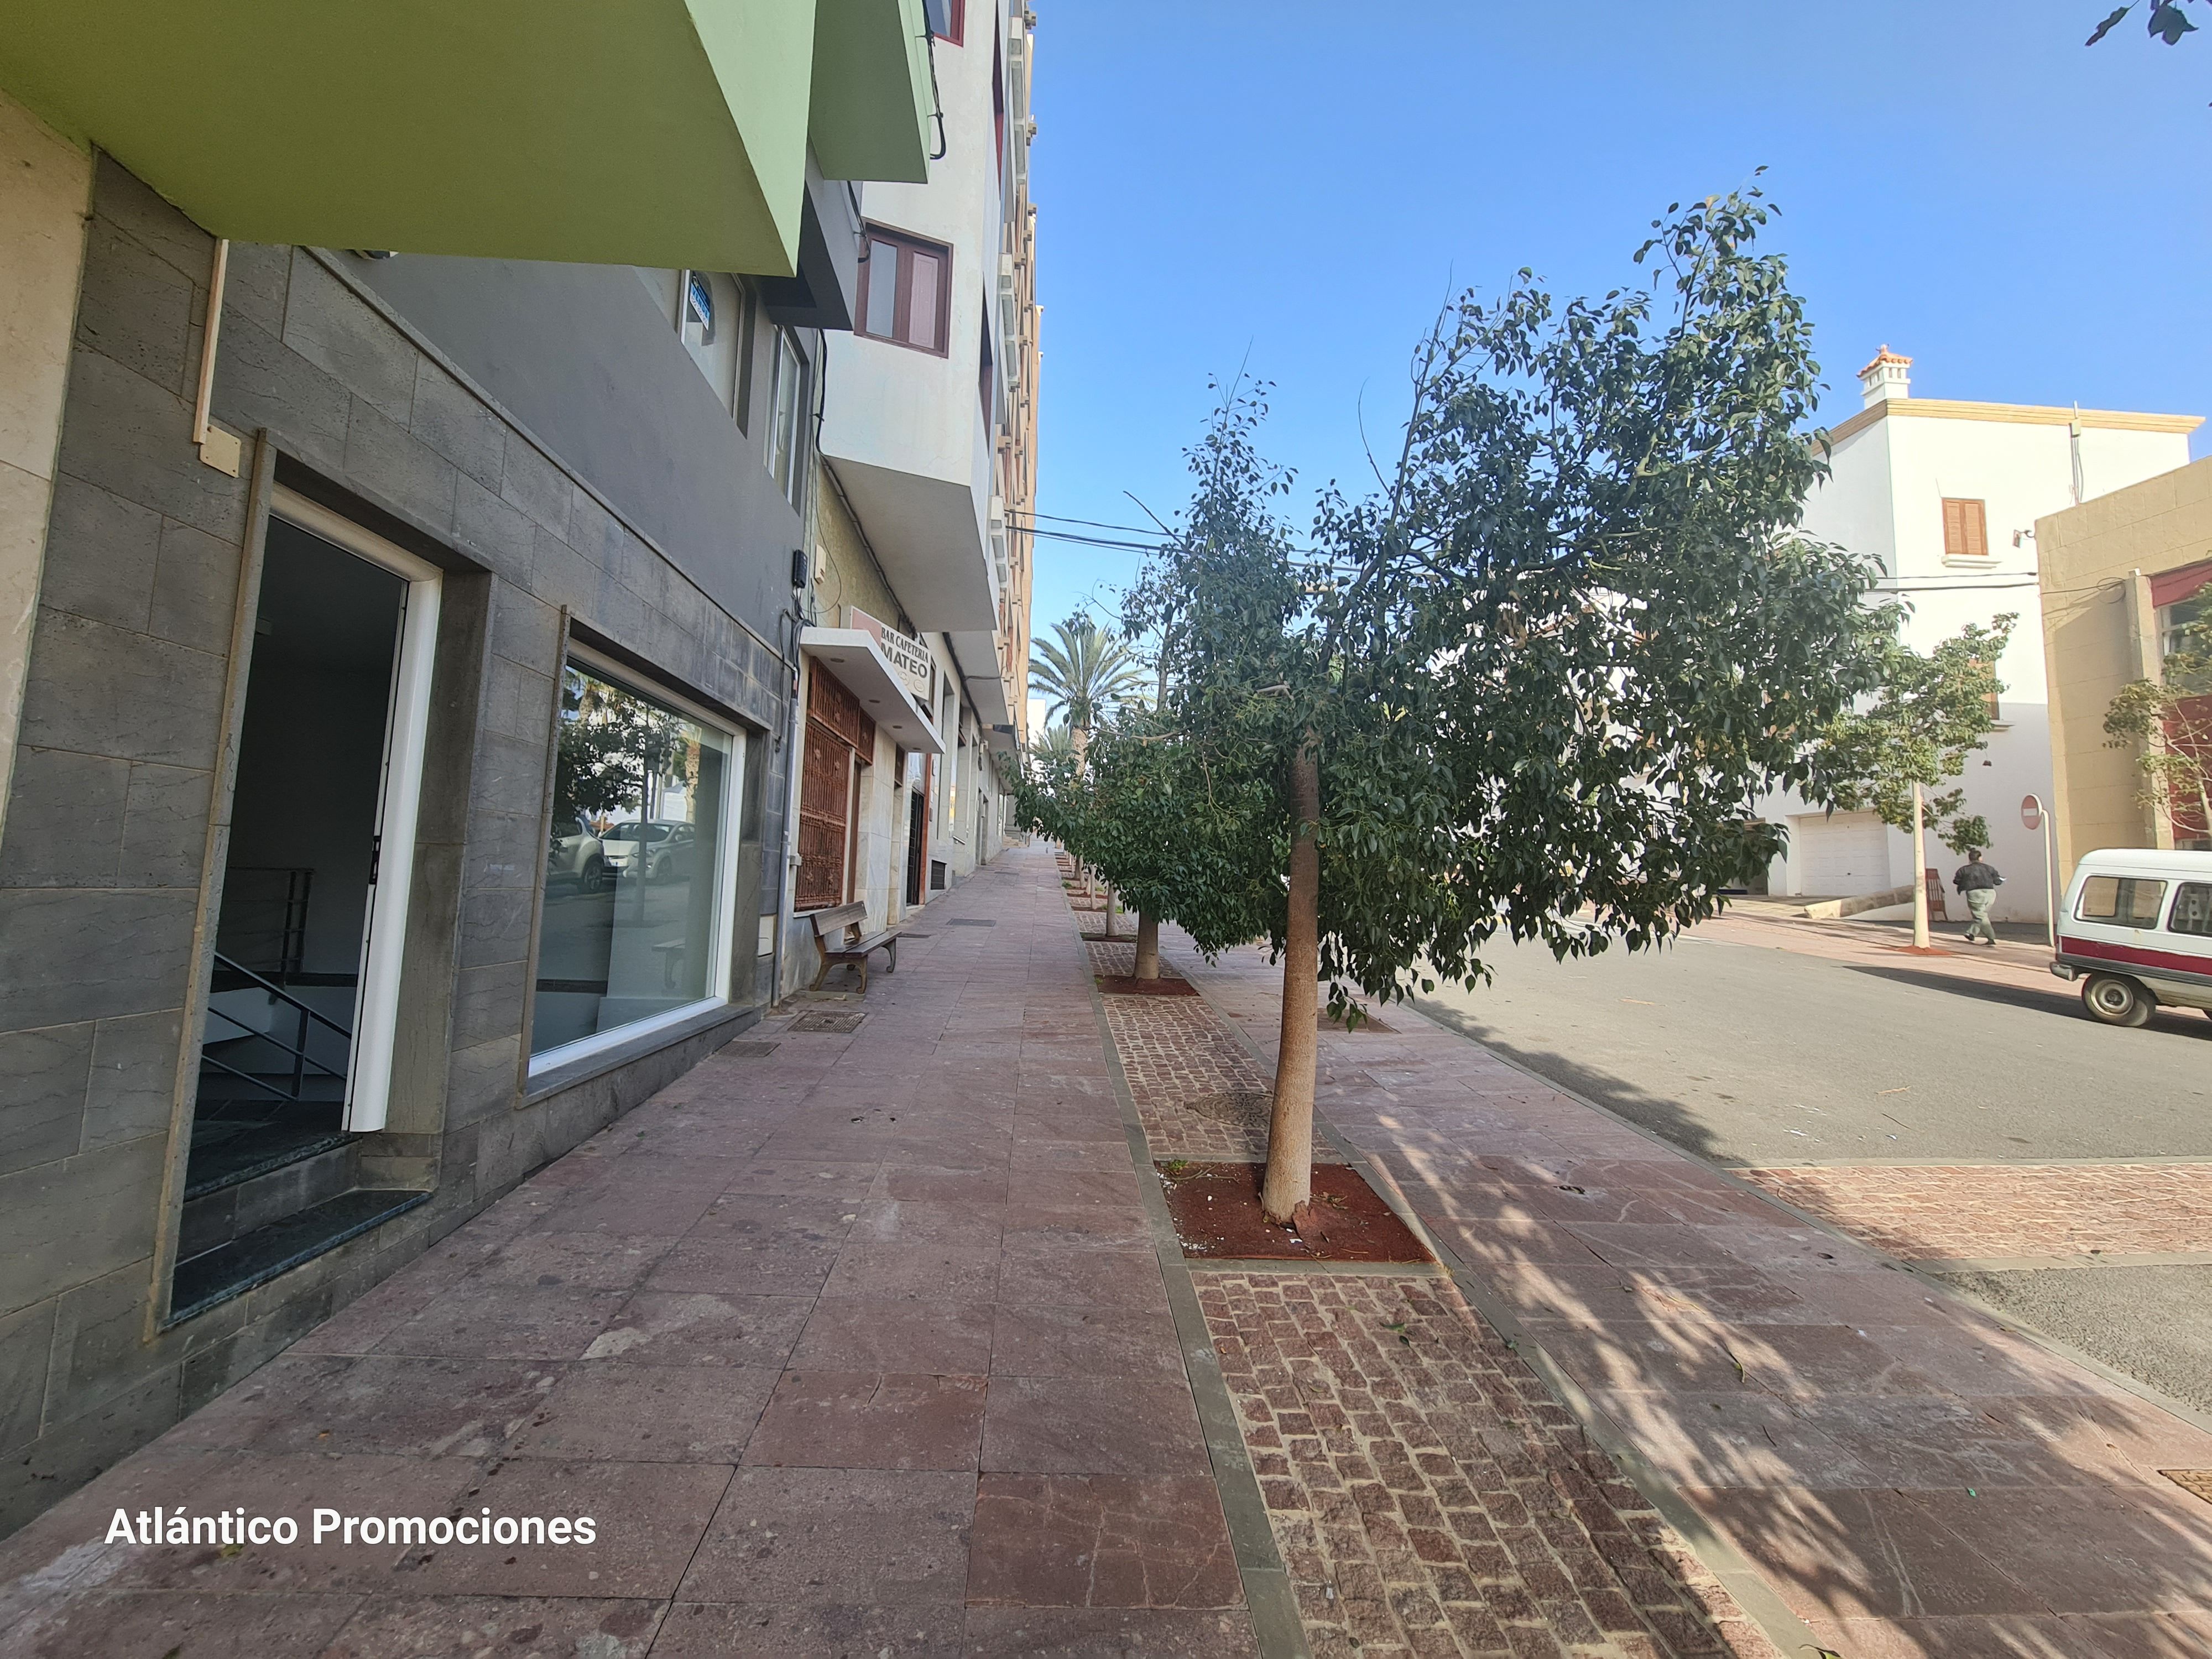 Anoi Petición Encarnar Locales de alquiler en Puerto del Rosario | fotocasa